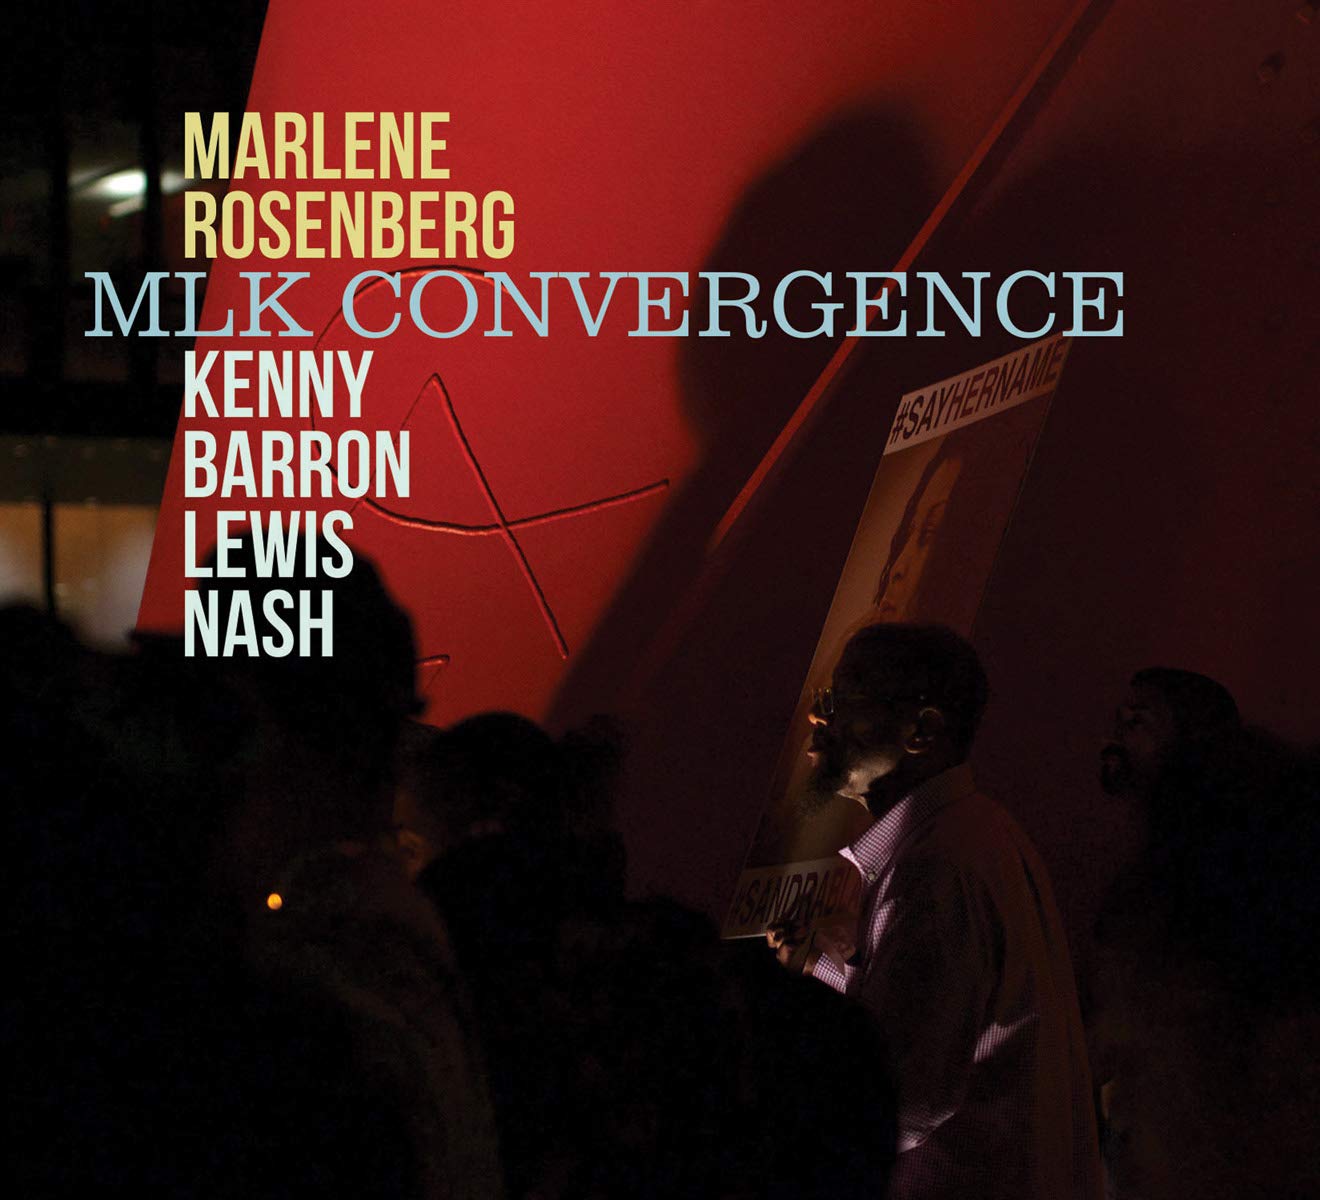 MARLENE ROSENBERG - Mlk Convergence cover 